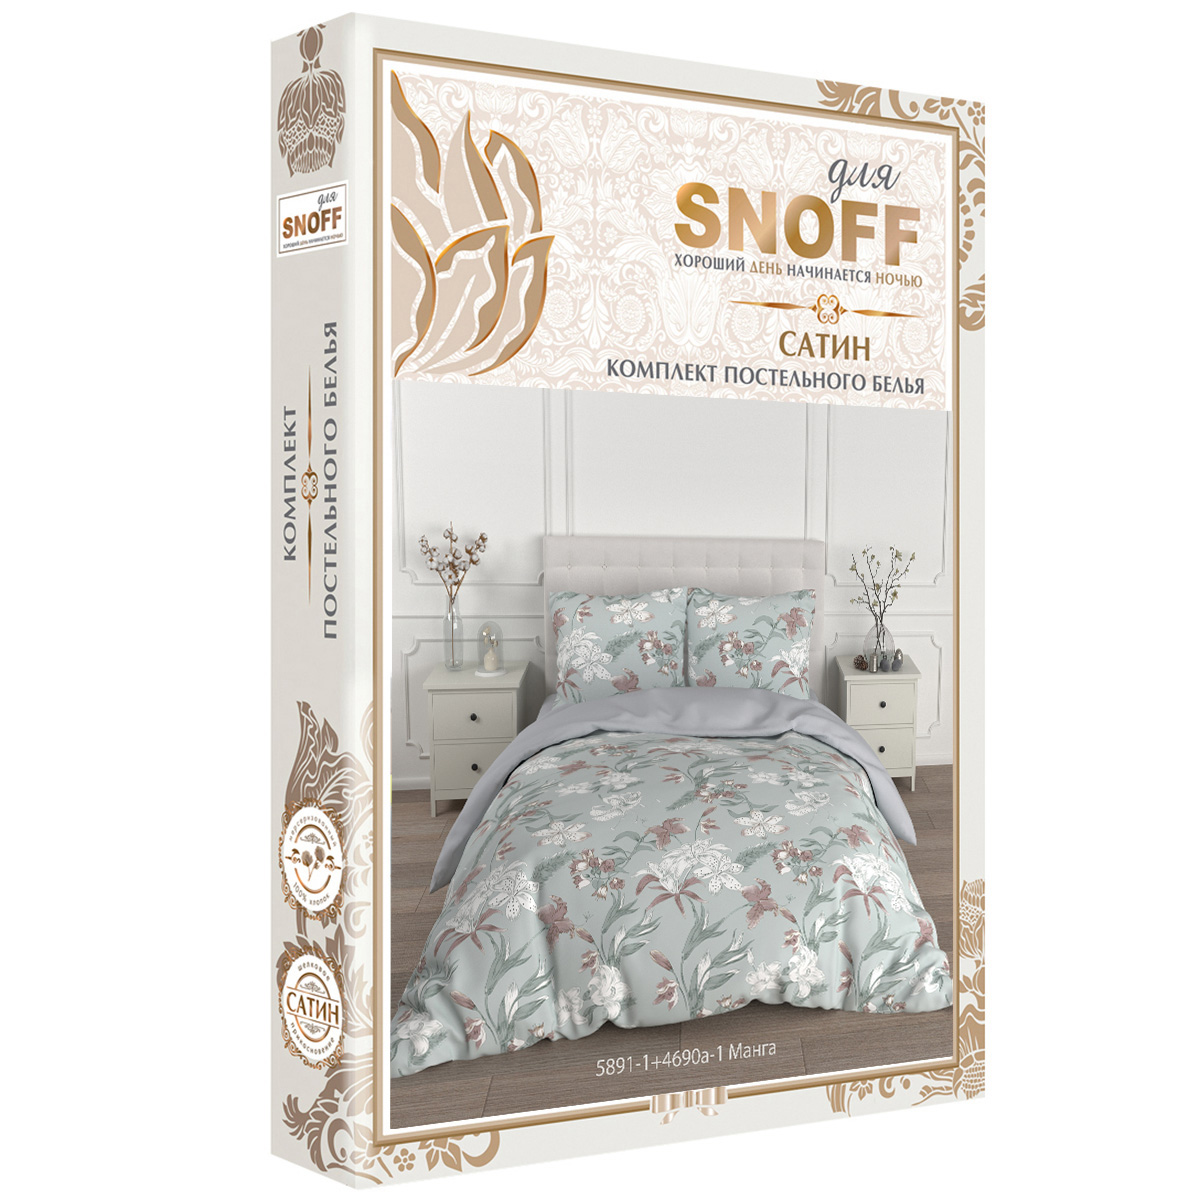 Комплект постельного белья для SNOFF Манга 1.5-спальный сатин - фото 7